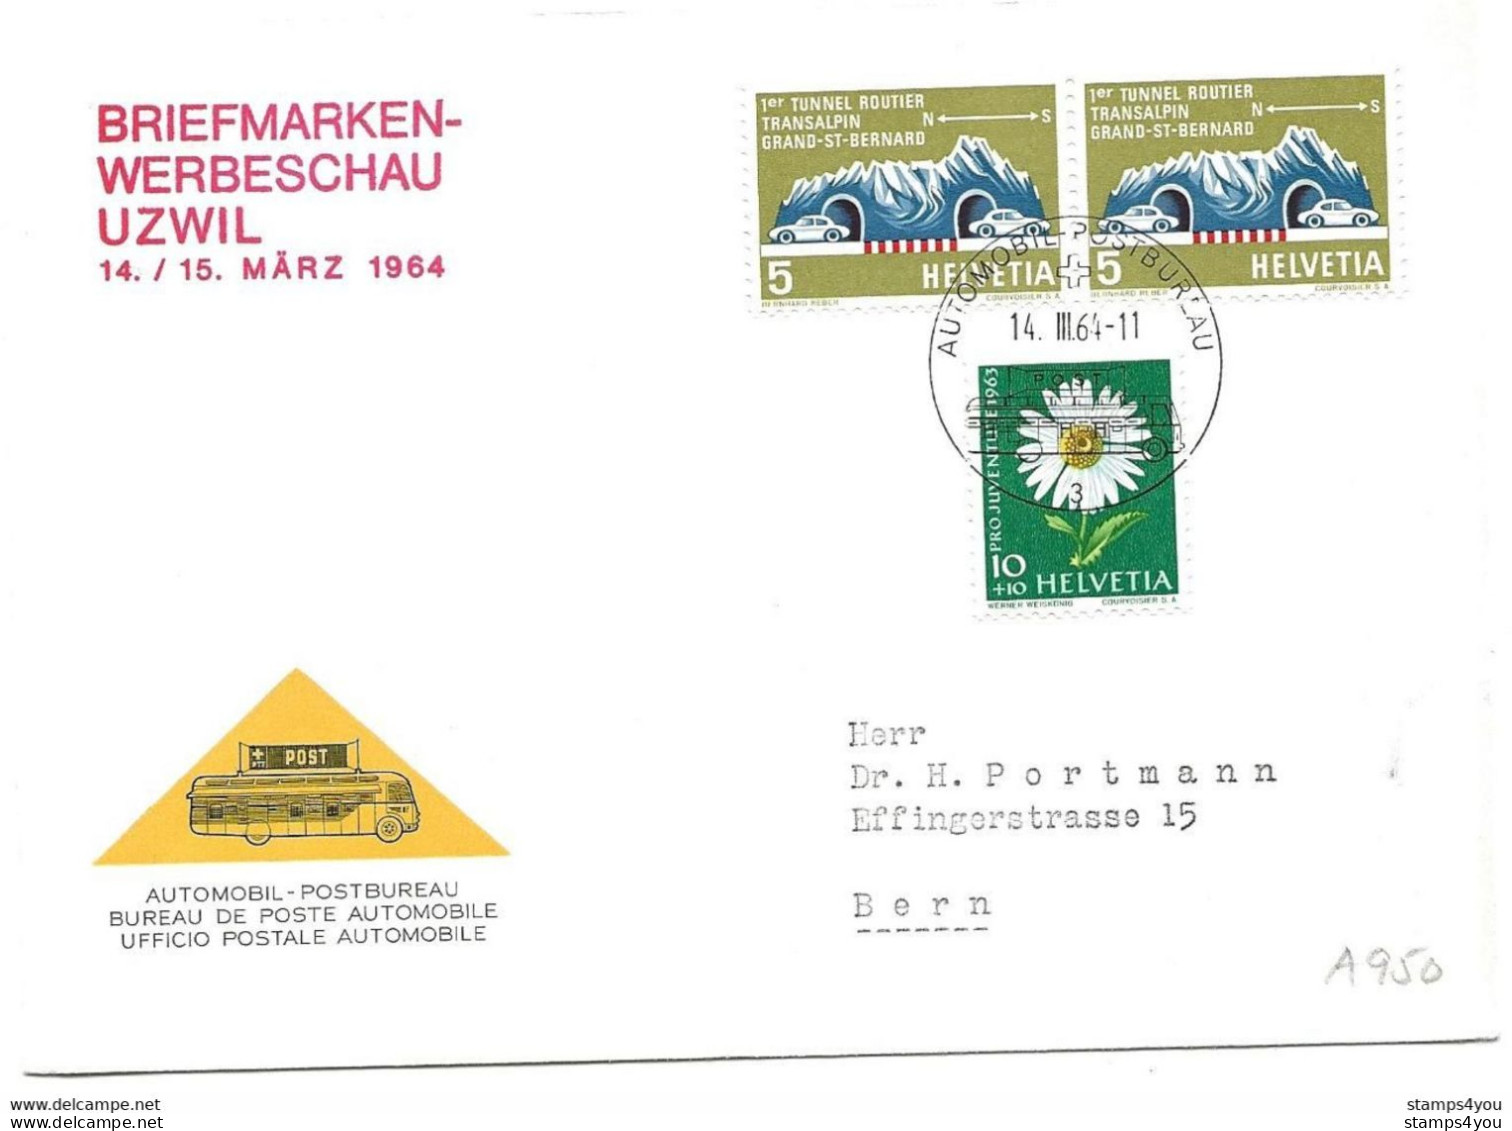 270 - 16 - Enveloppe Avec Oblit Spéciale "Briefmarken Werbeschau Uzwil 1964" - Postmark Collection